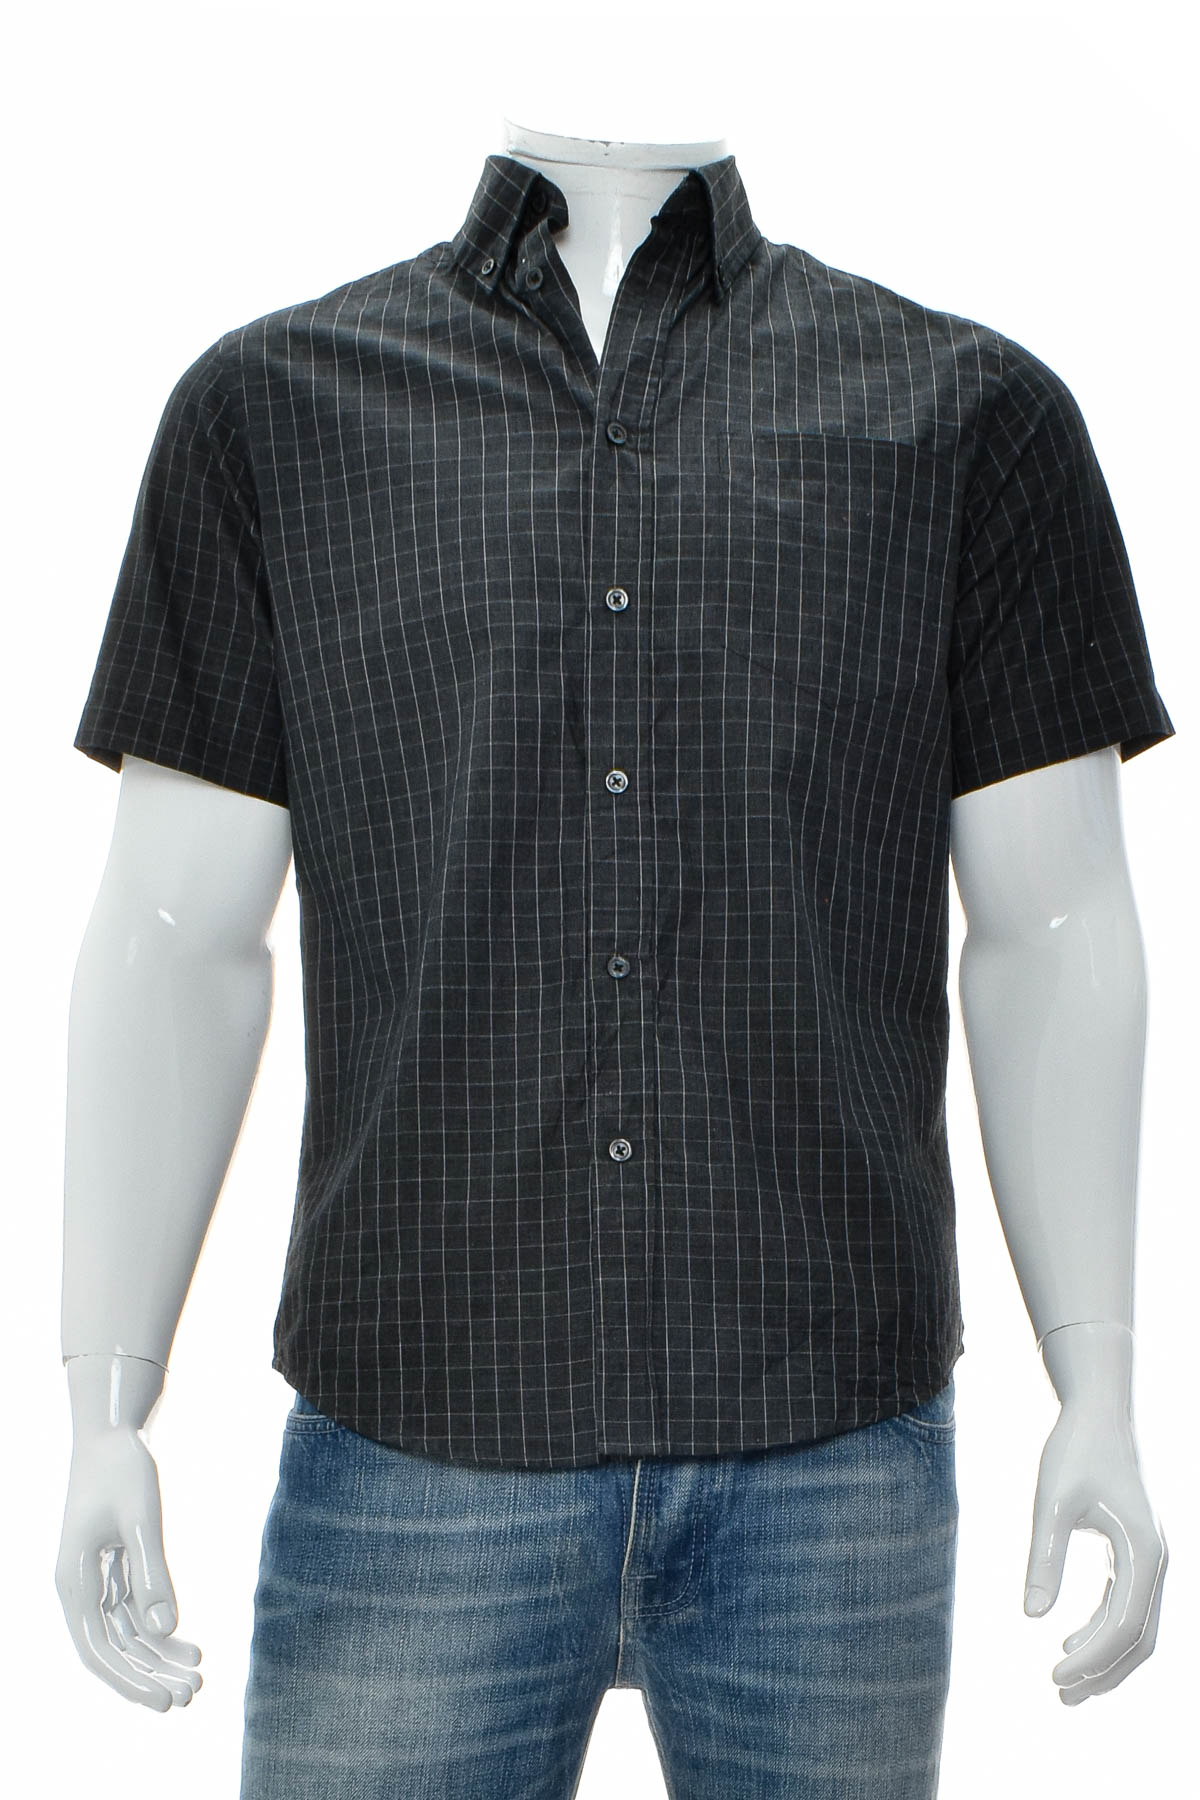 Ανδρικό πουκάμισο - Merona - 0